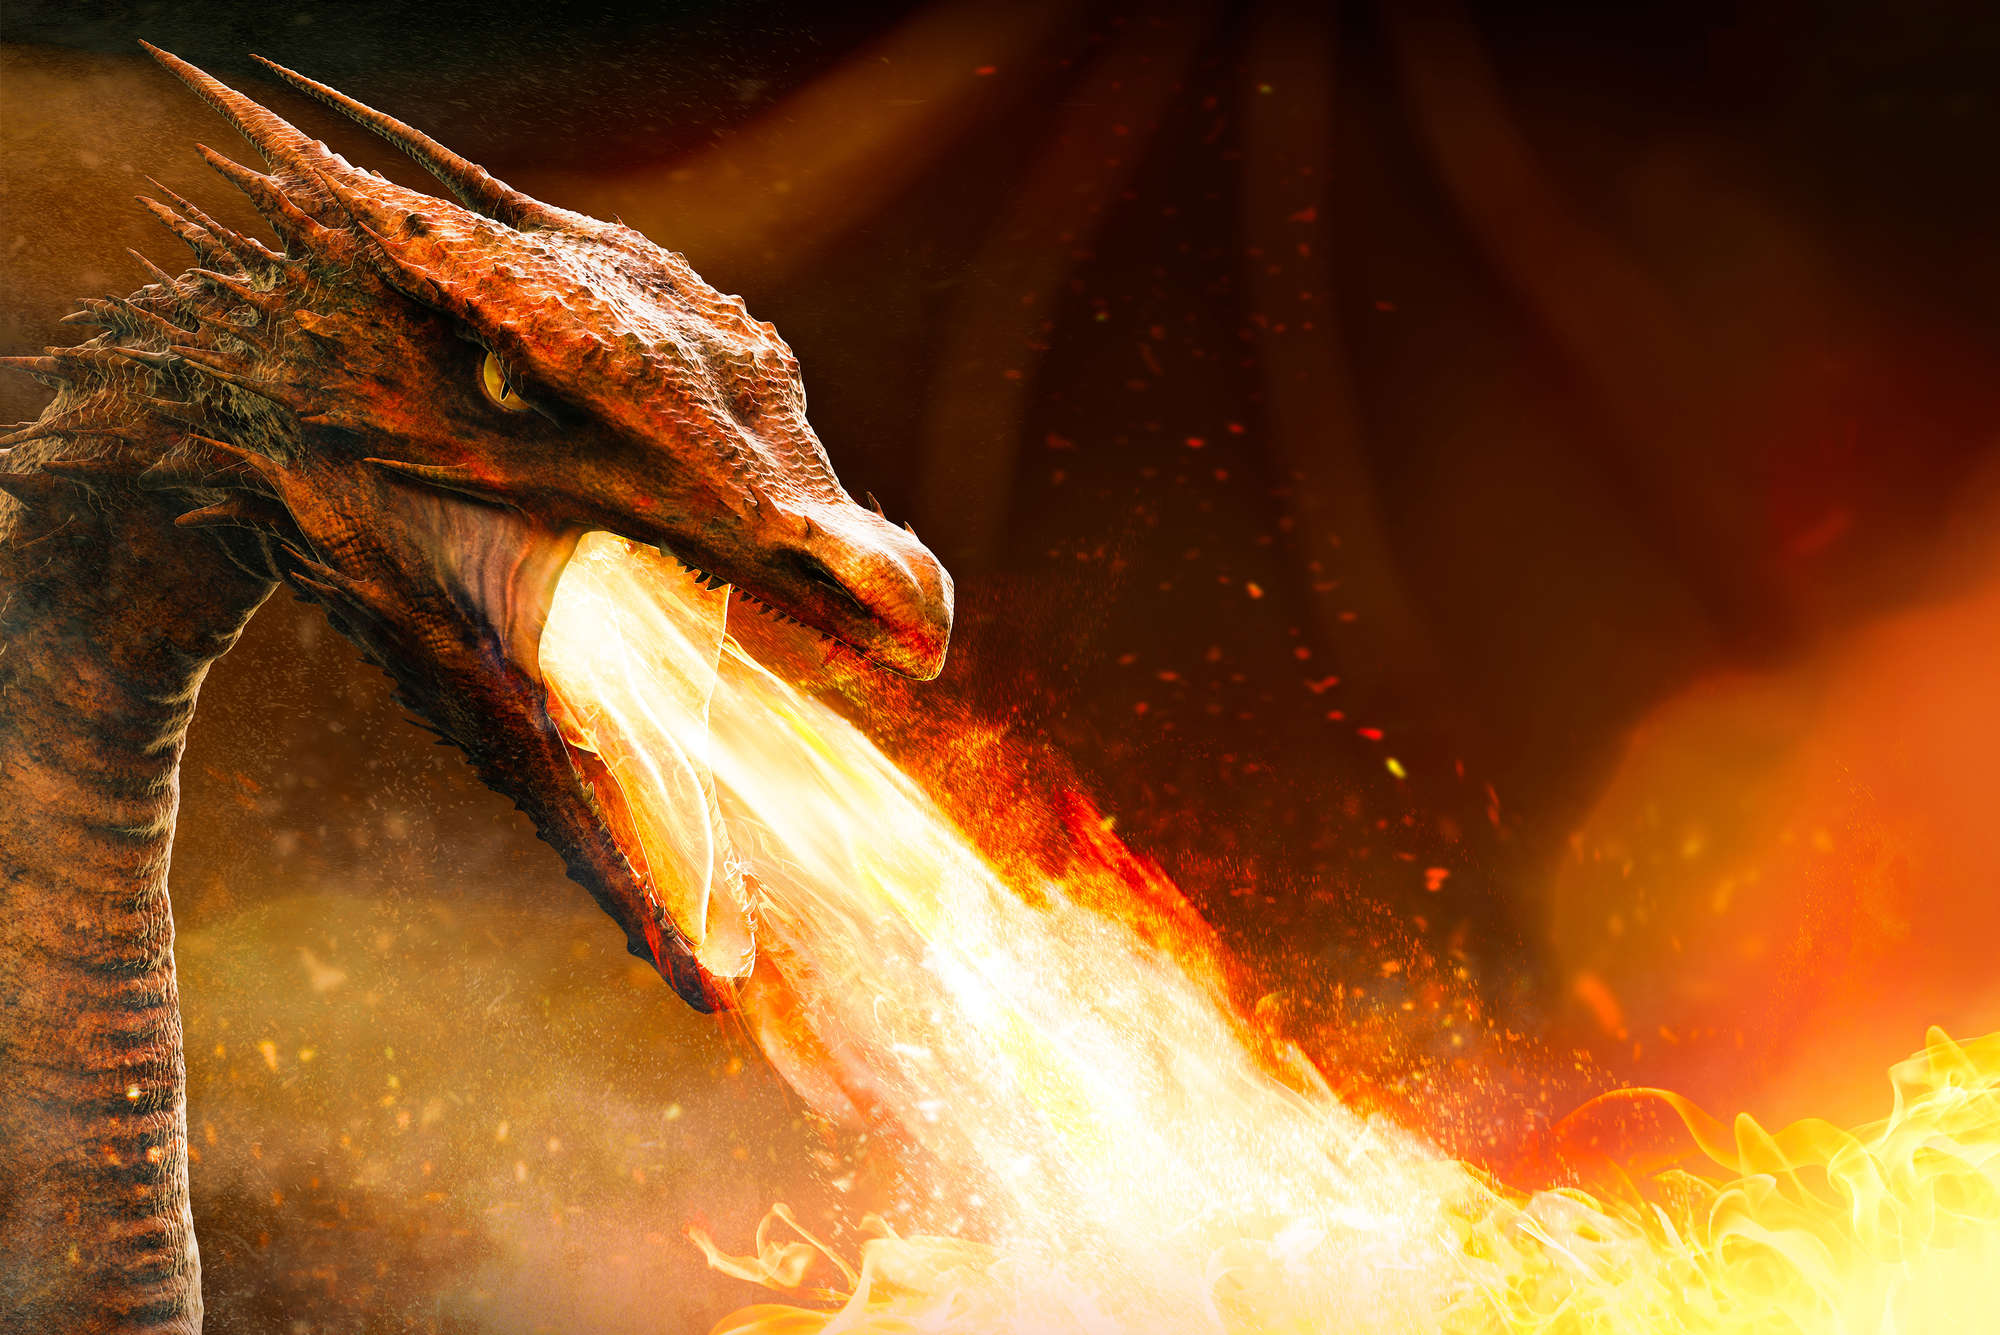             Papel pintado de fantasía dragón que escupe fuego sobre vellón liso mate
        